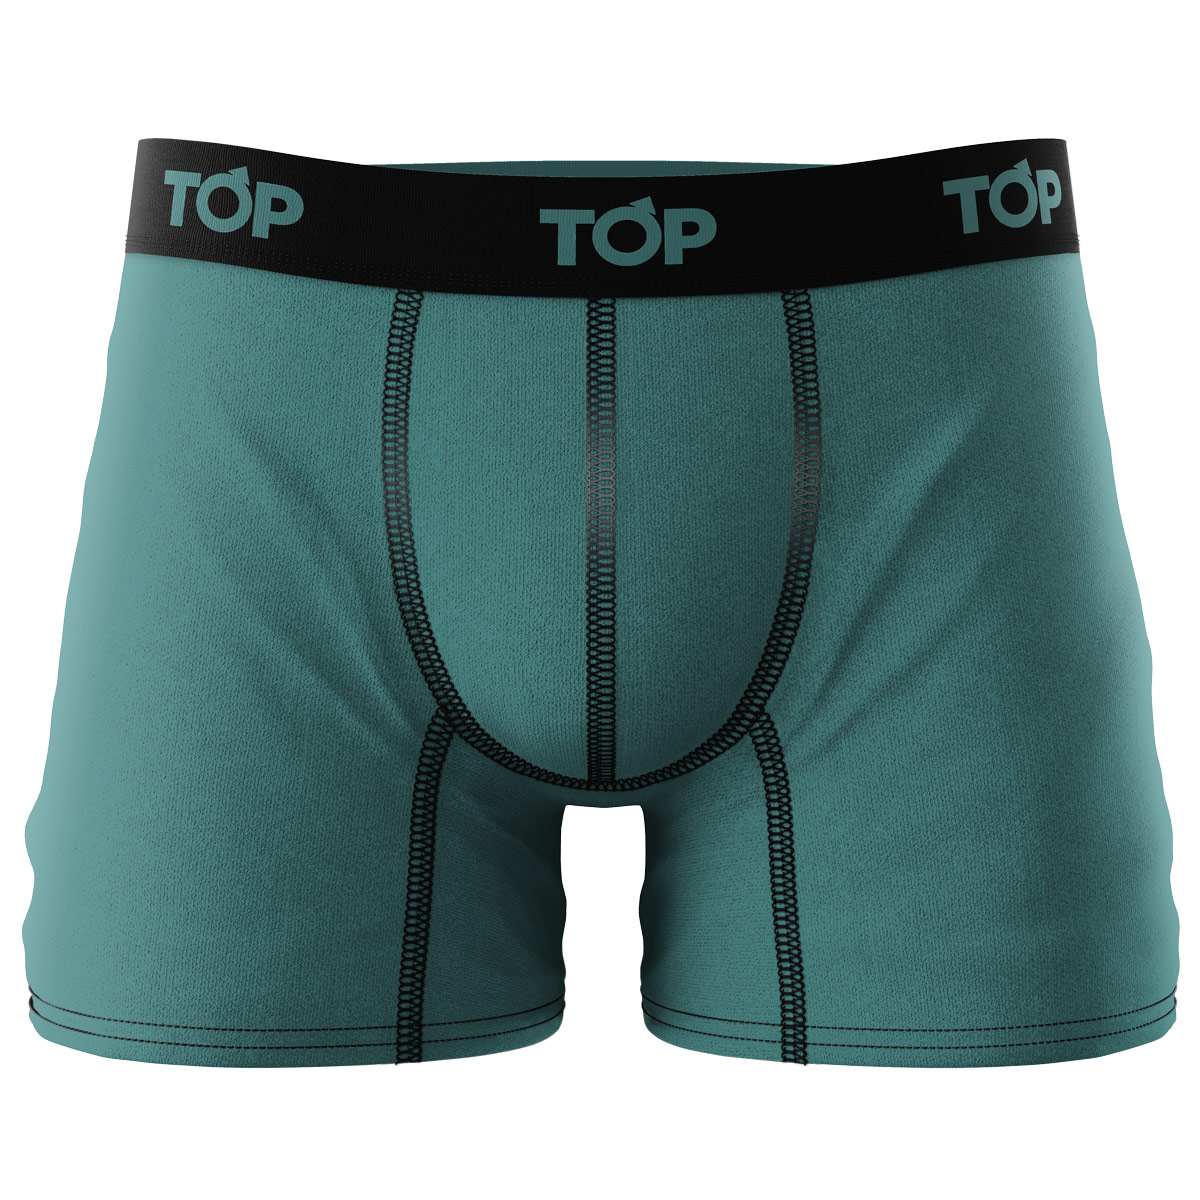 Hombre - Top Underwear